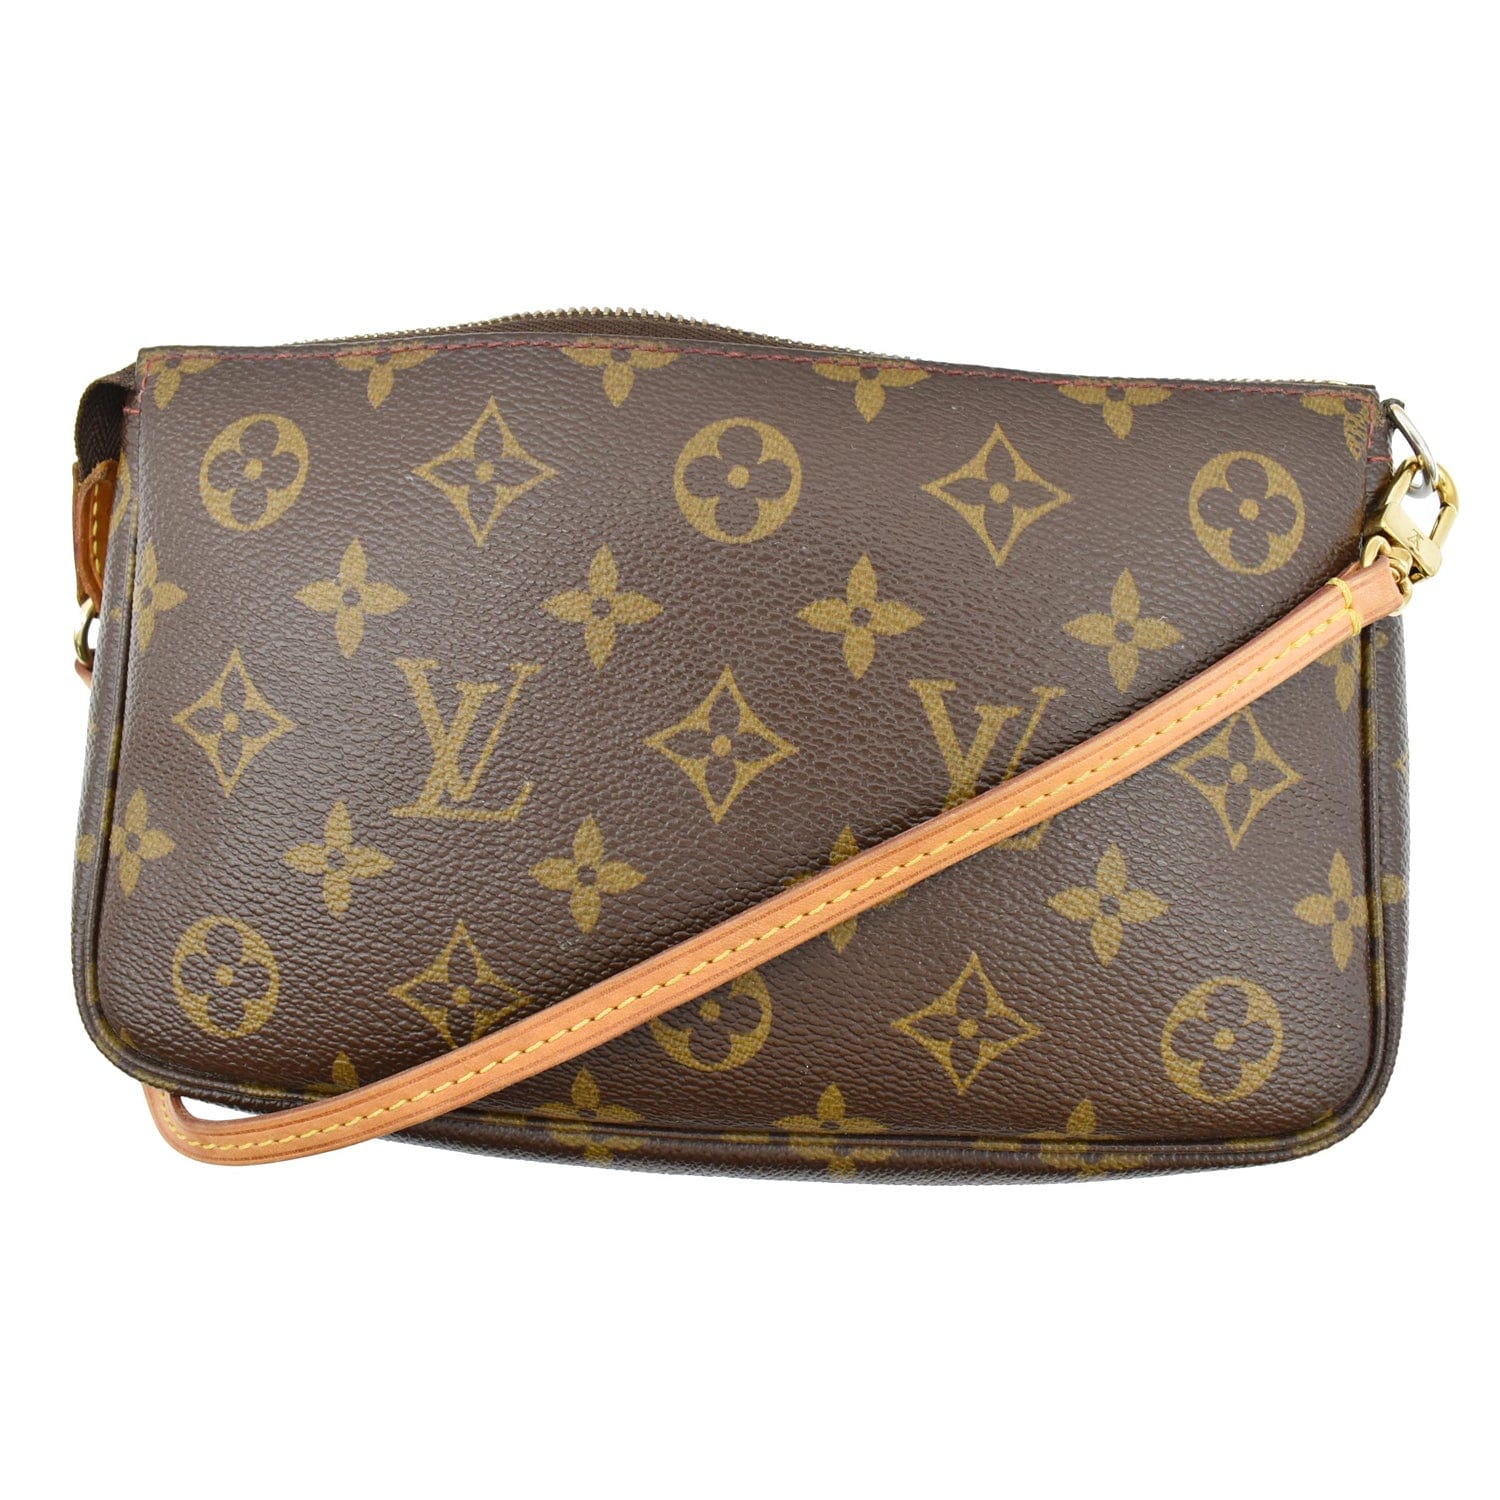 So adorable Louis Vuitton Monogram Cerises Pochette $795 #louisvuitton  #louisvuittonbag #louisvuittonpochette #louisvuittonlover #handbag…